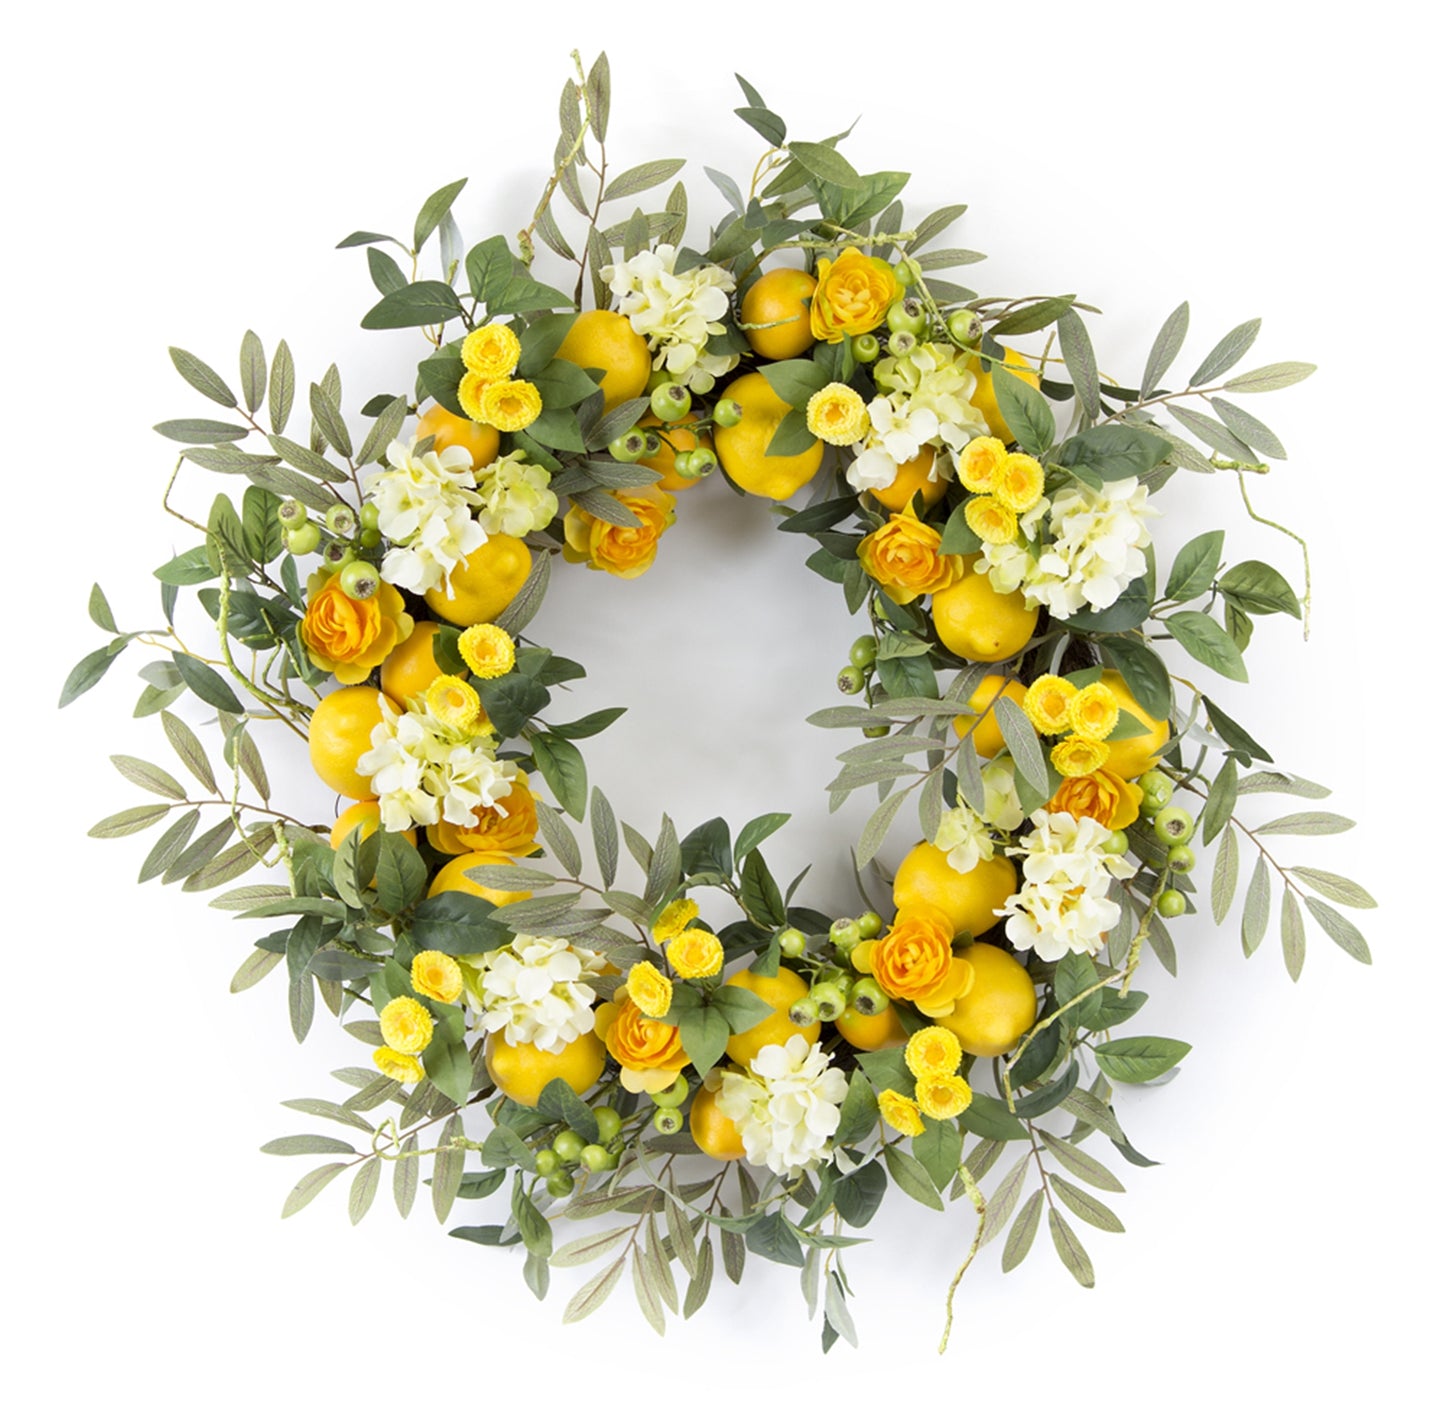 Lemon/Floral Wreath 28"